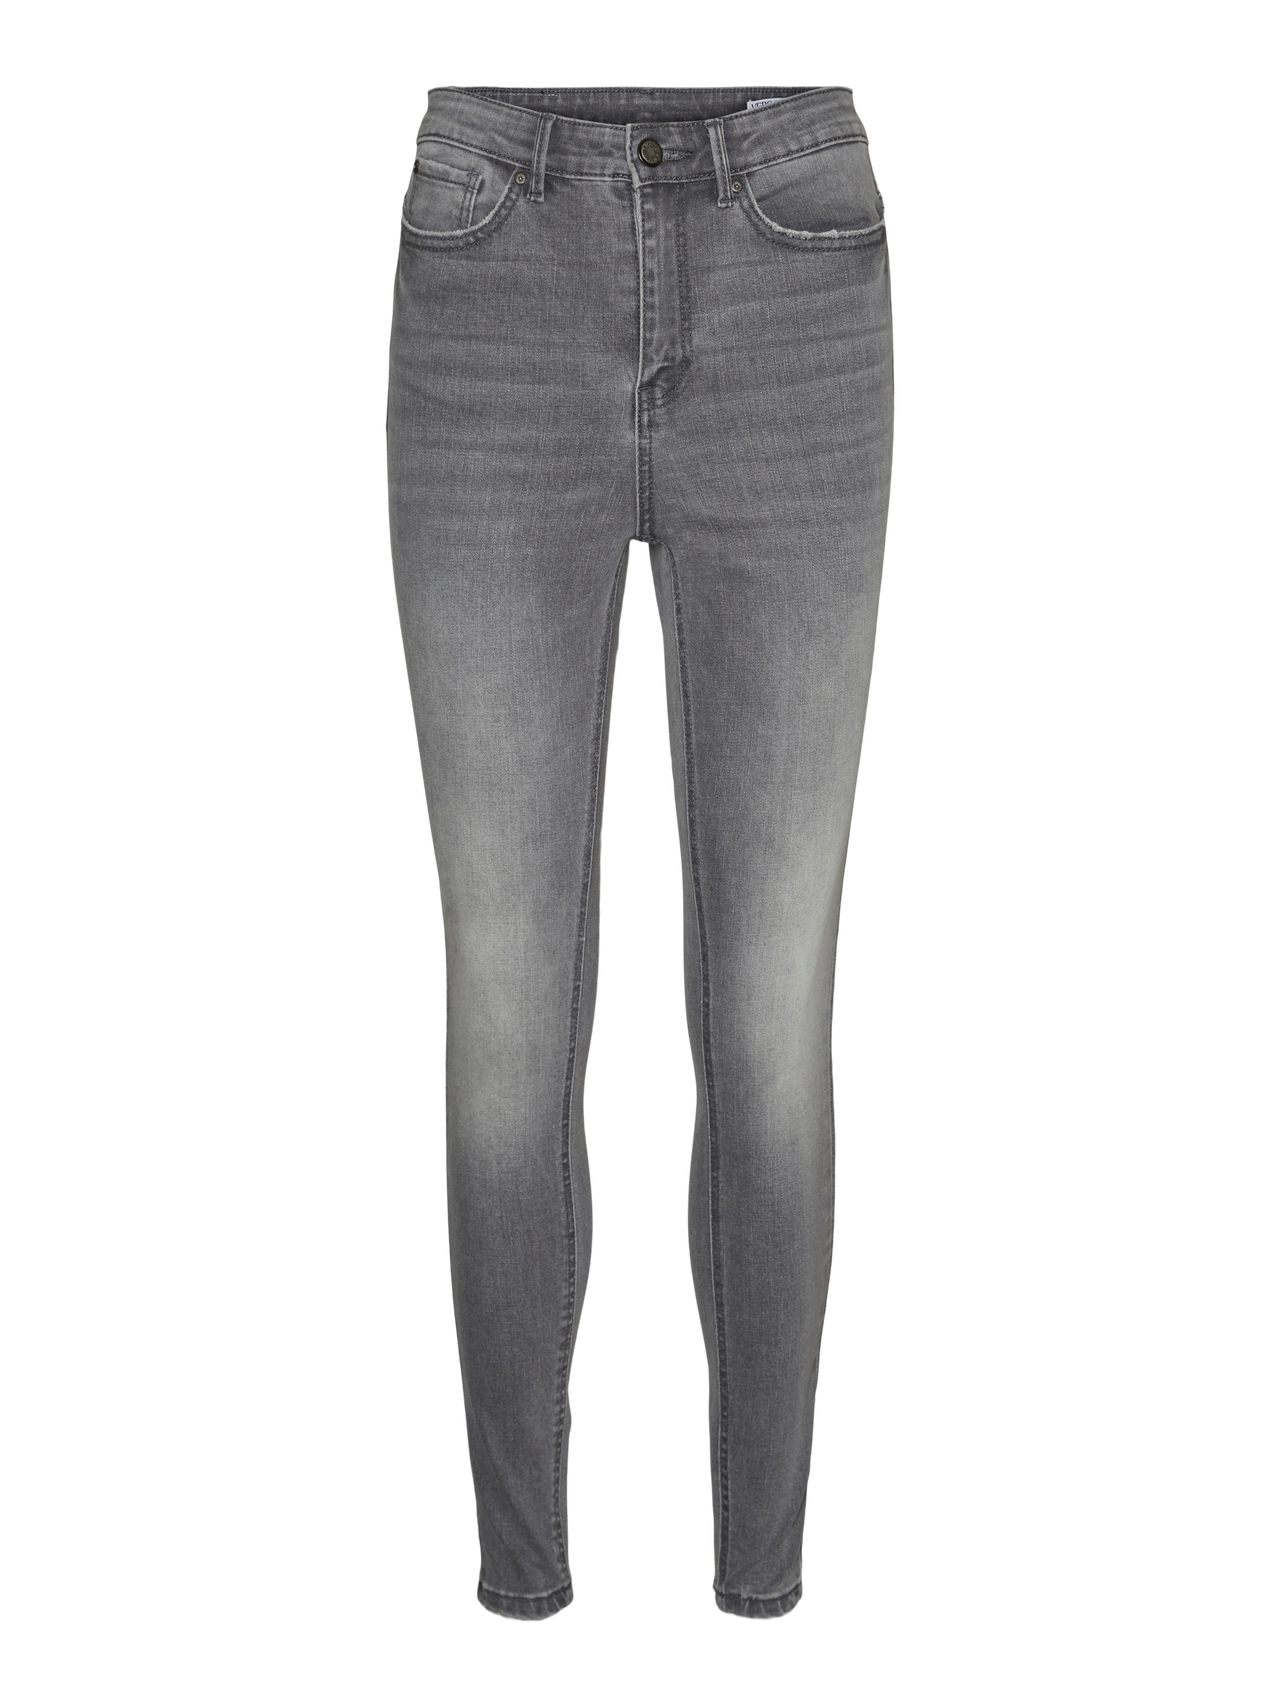 Vero Moda VMSOPHIA Skinny Fit Jeans -Light Grey Denim - 10315101